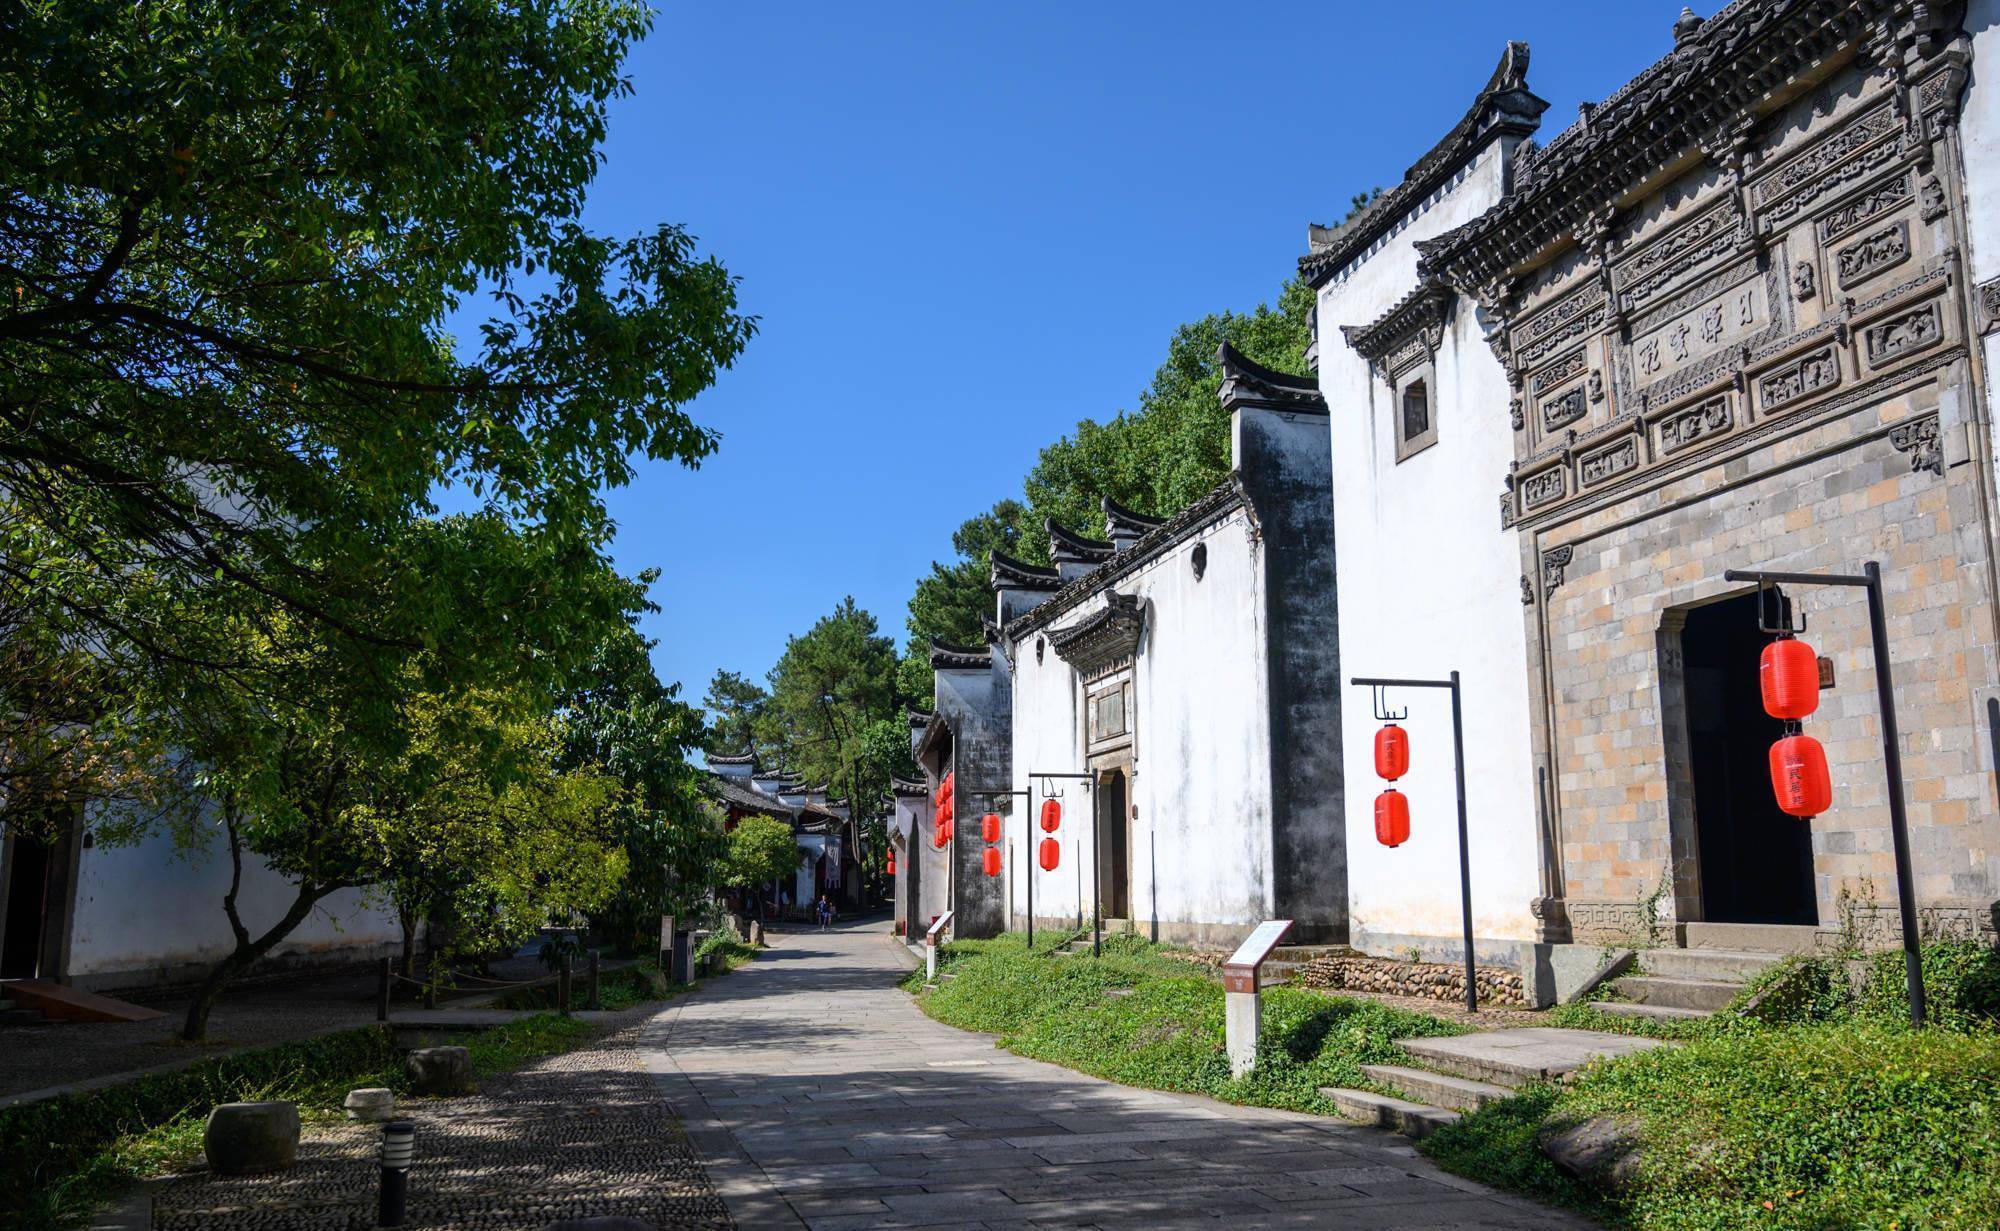 浙江龙游最著名景点，堪称“江南古建筑的代表”，人少景美免门票